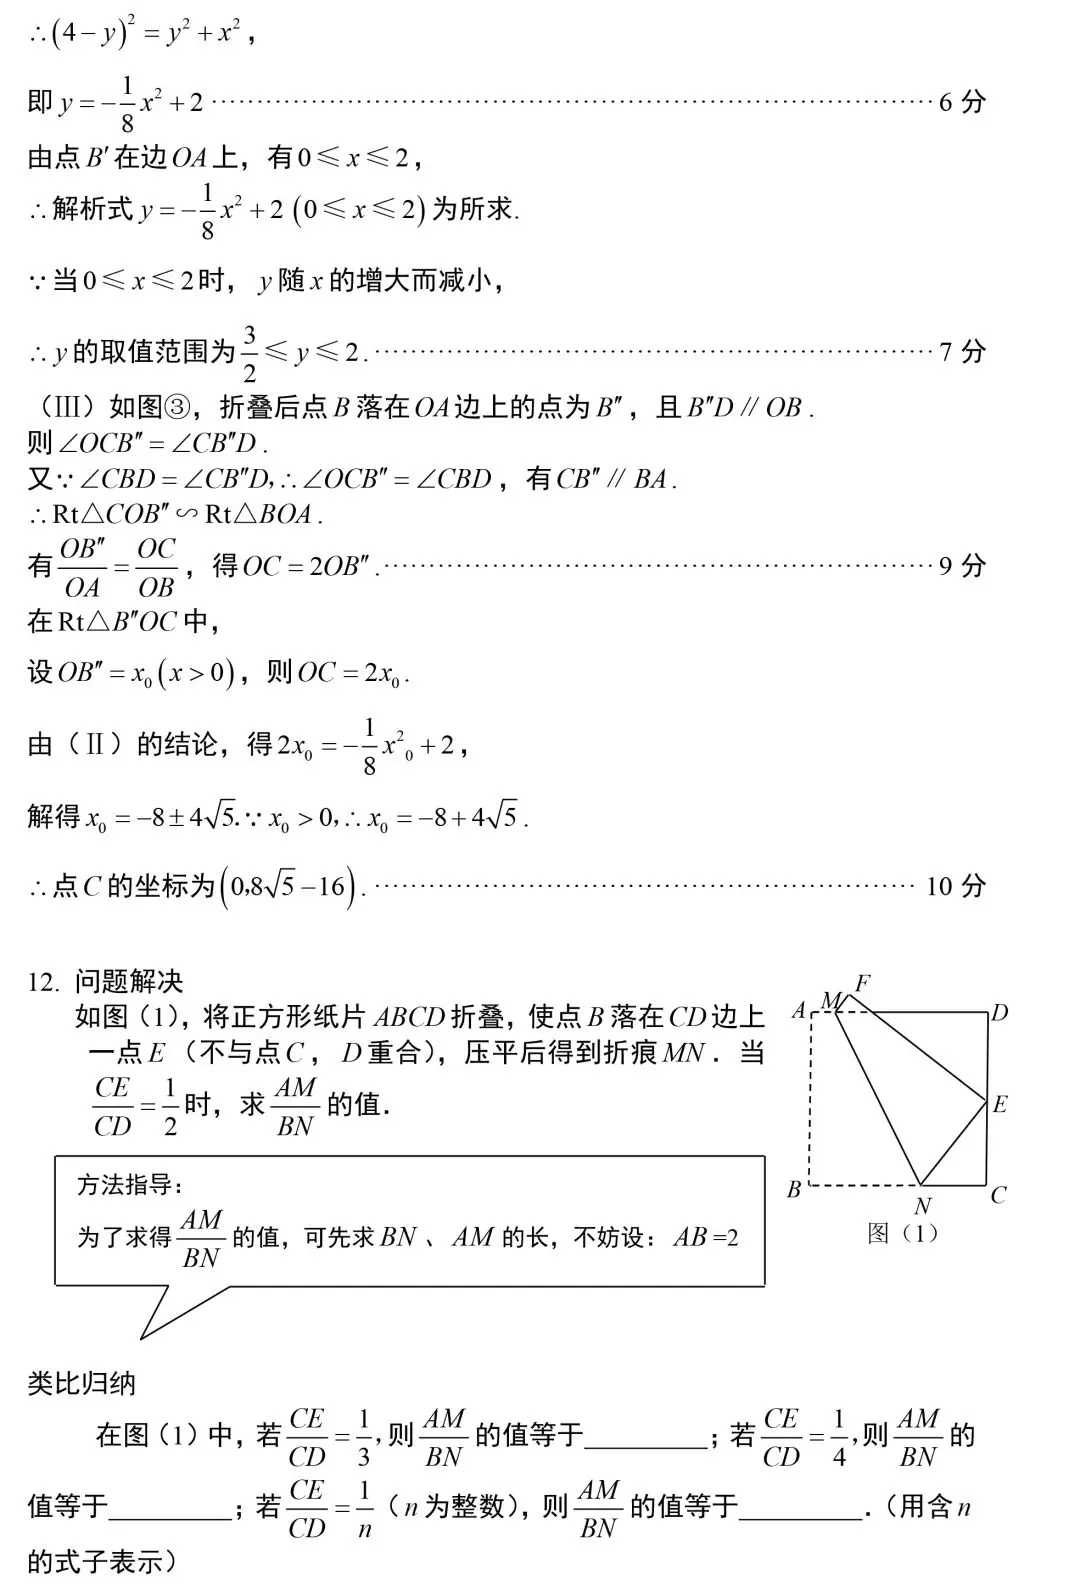 【中考数学】初中数学常考专题——最短路径+动点问题 第27张